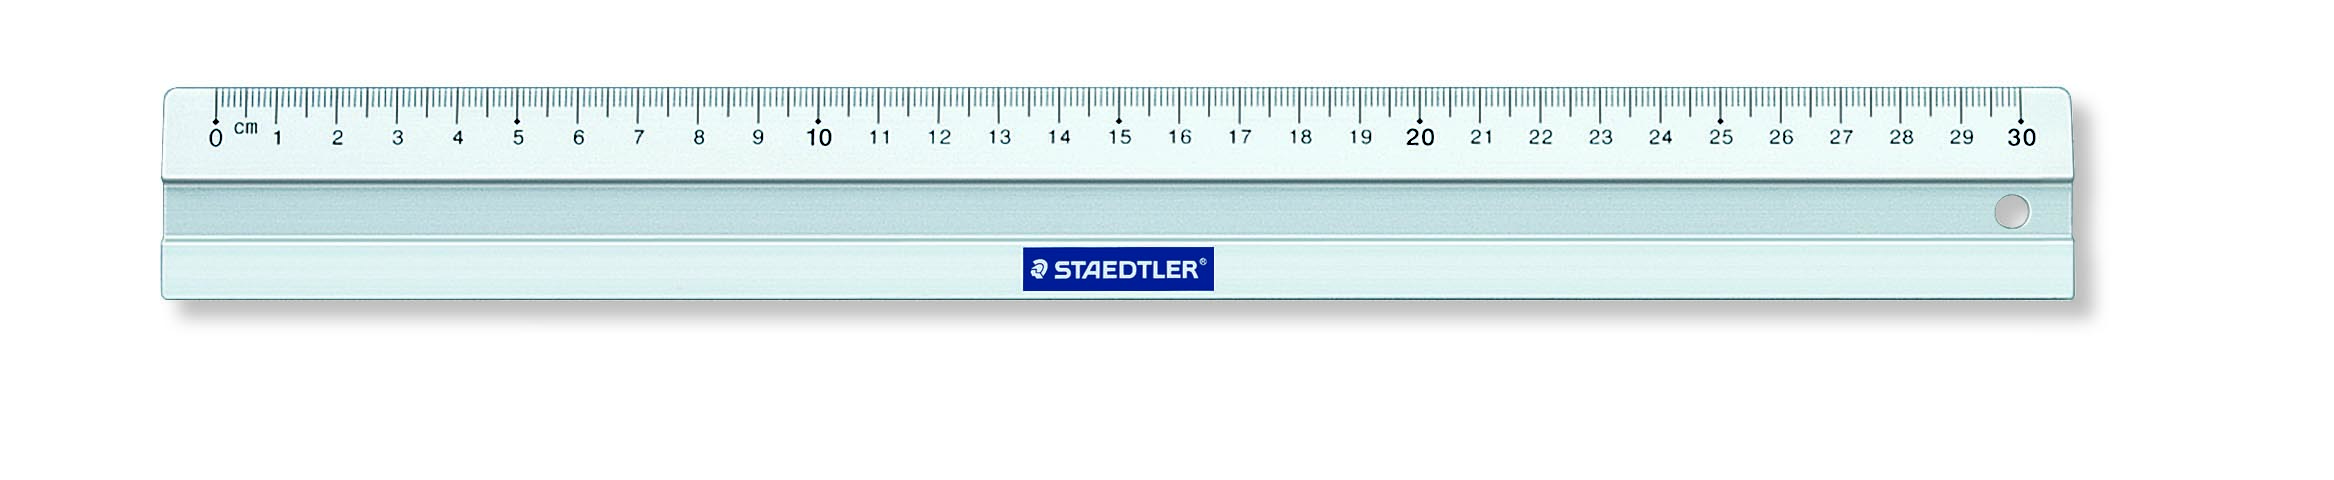 Staedtler линейка алюминиевая 30 см